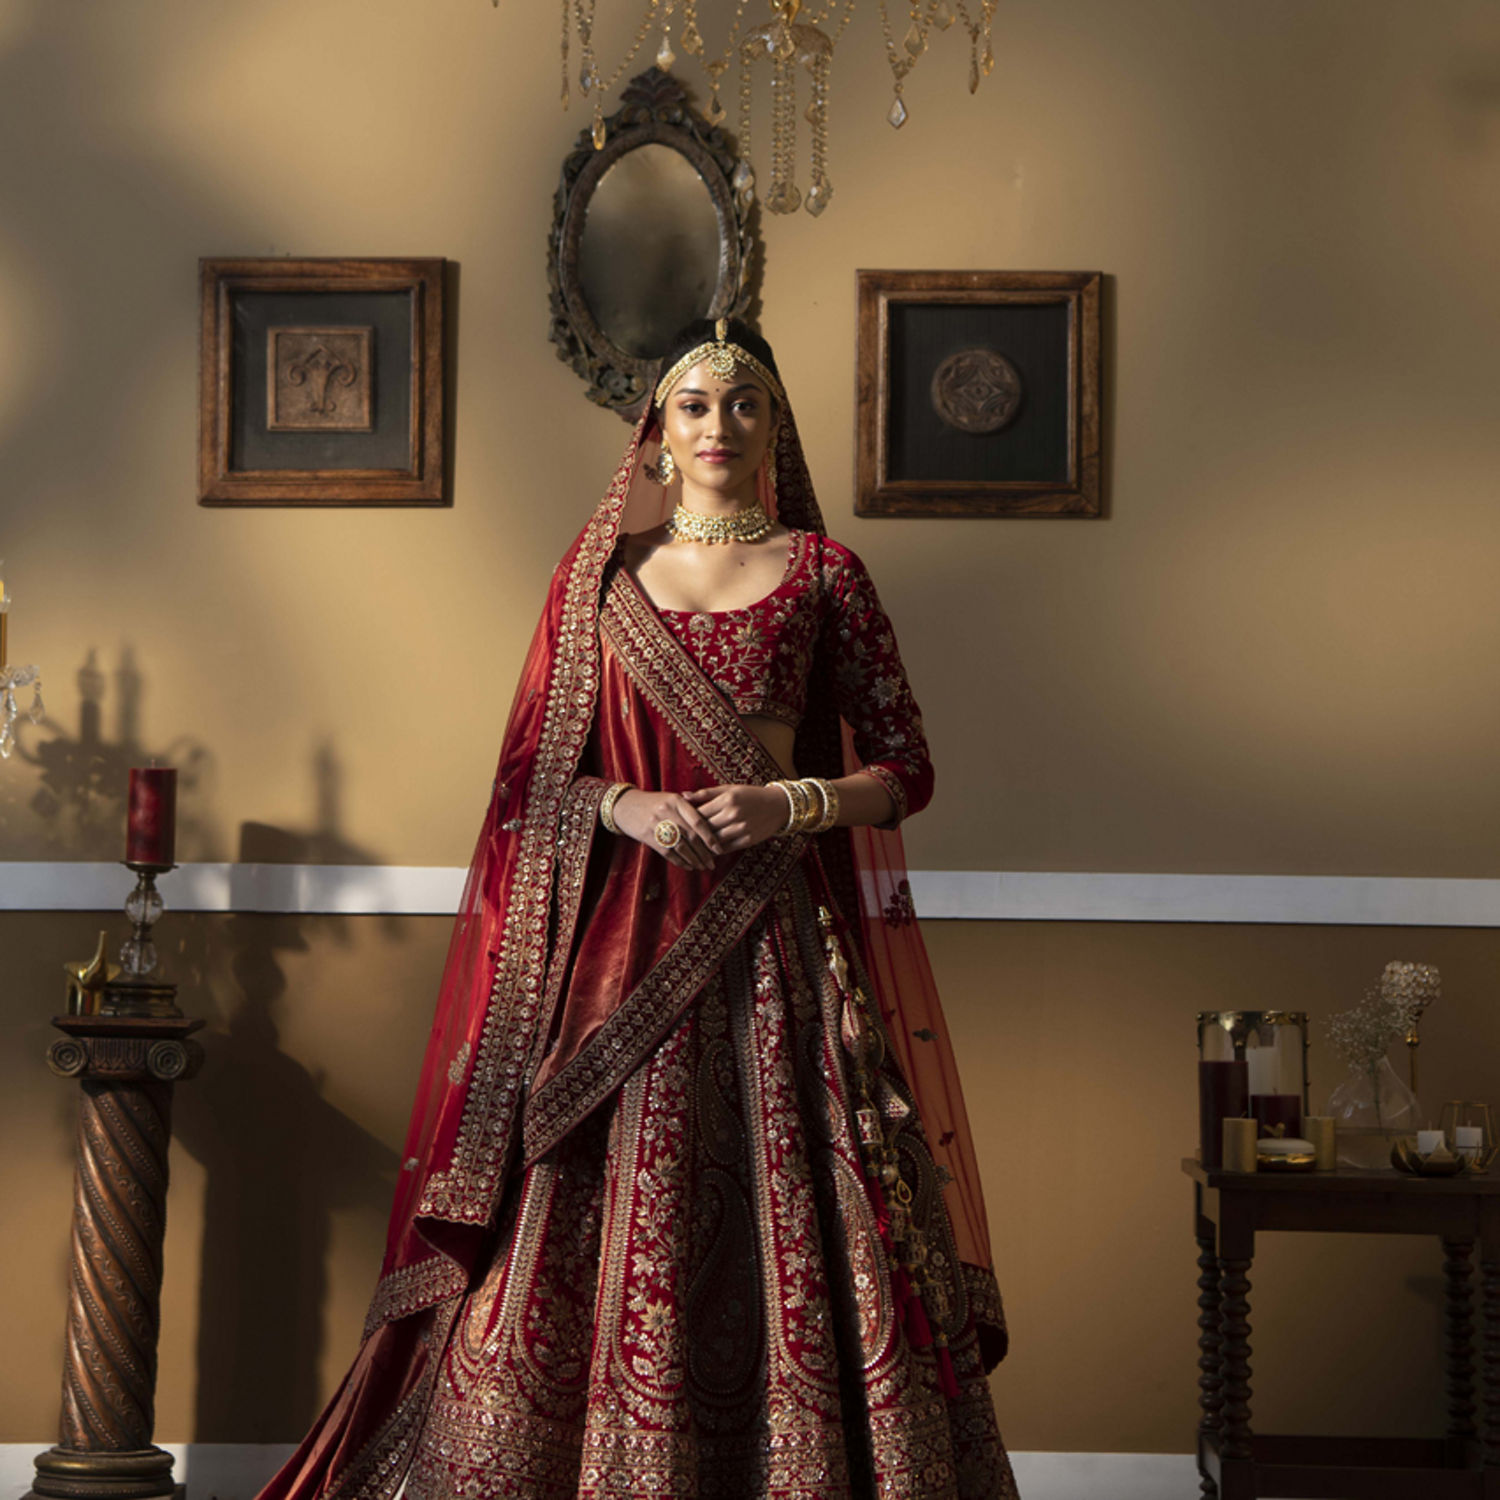 Buy Rameshwaram Fabrics Haldi Ceremony Dress for men, Wedding Dhoti Dupatta  Set Wedding at Amazon.in